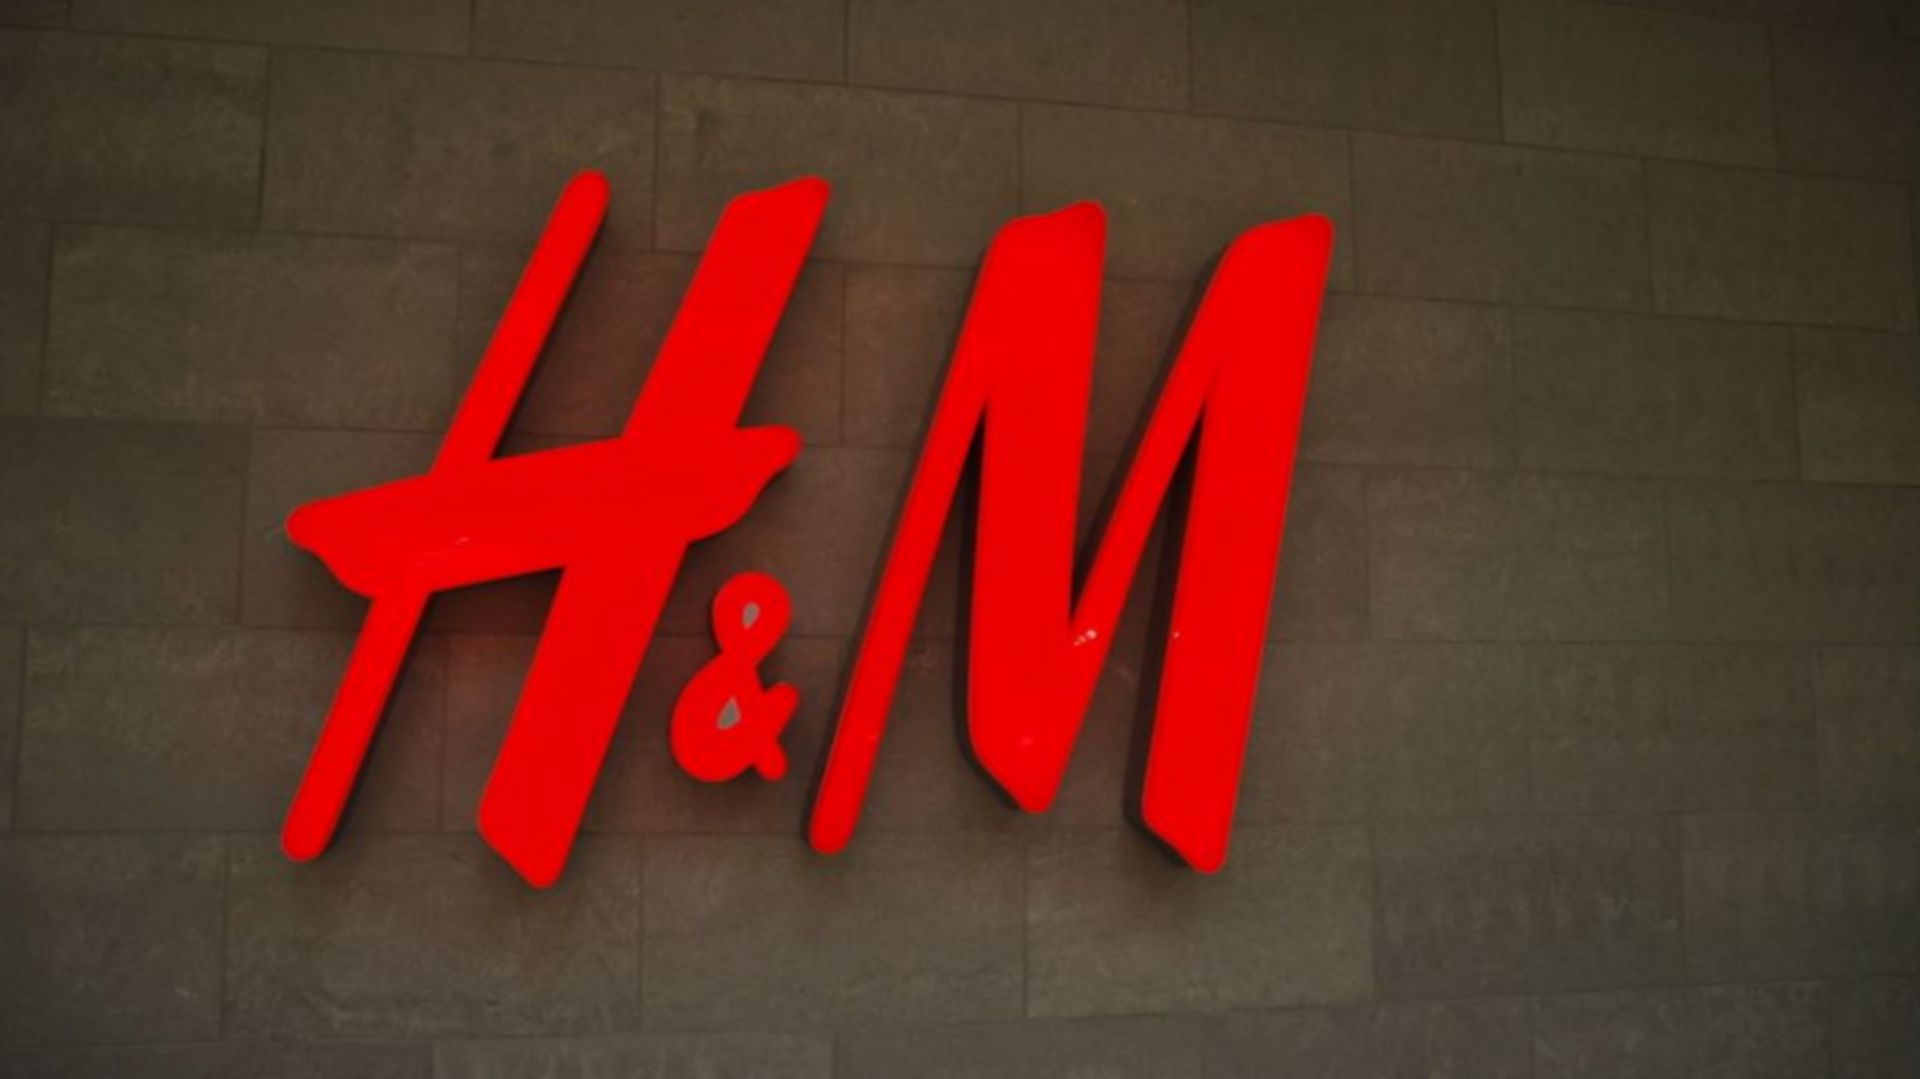 Incendies en Amazonie: H&M suspend ses achats de cuir au Brésil